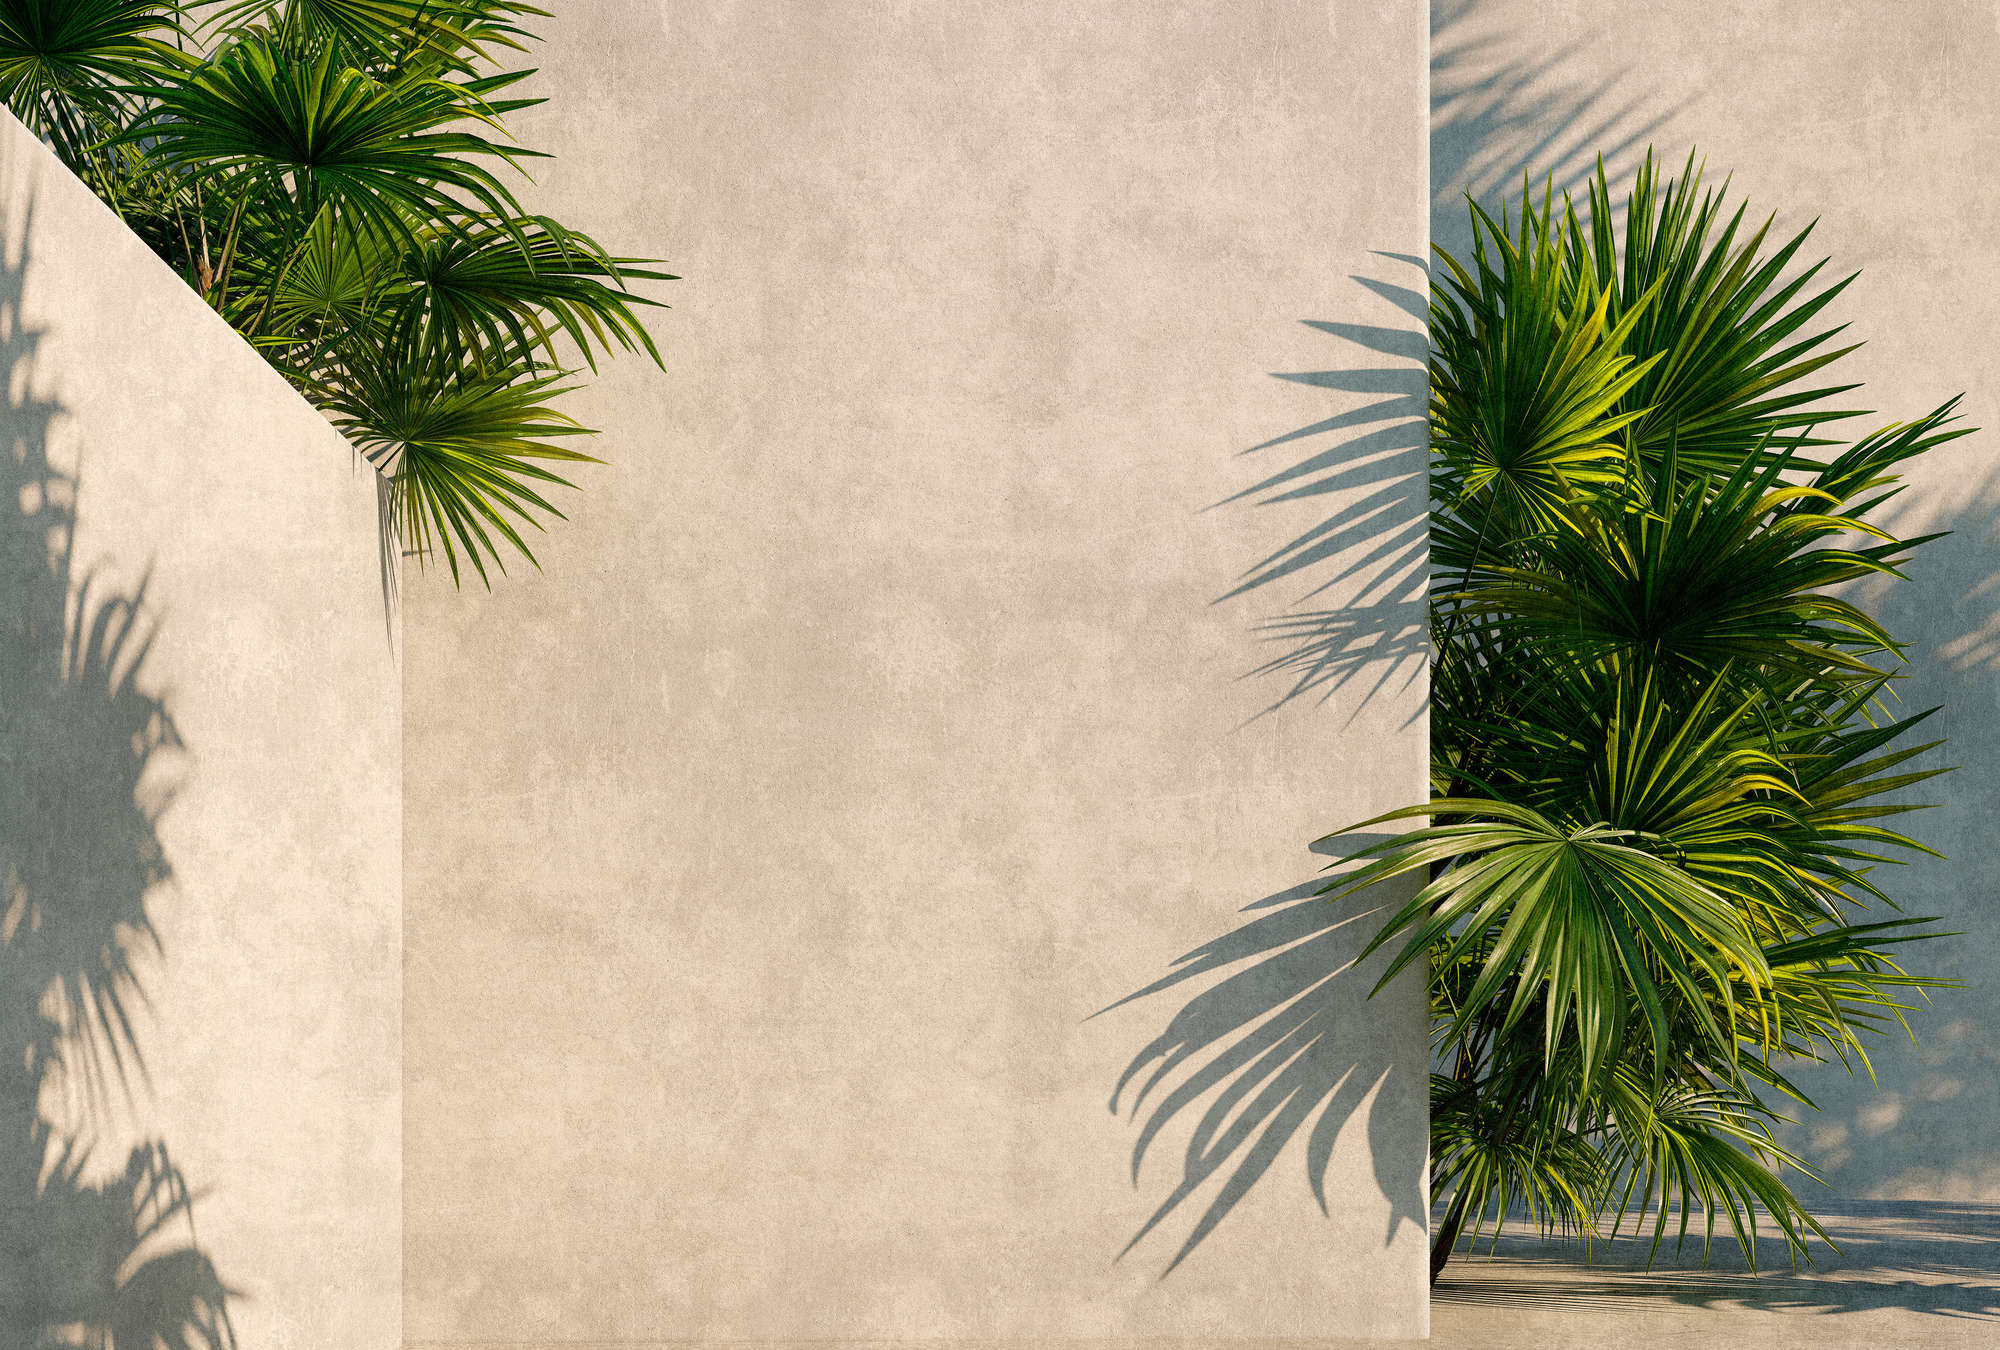             Túnez 1 - foto papel pintado palmeras en el patio con paredes de yeso
        